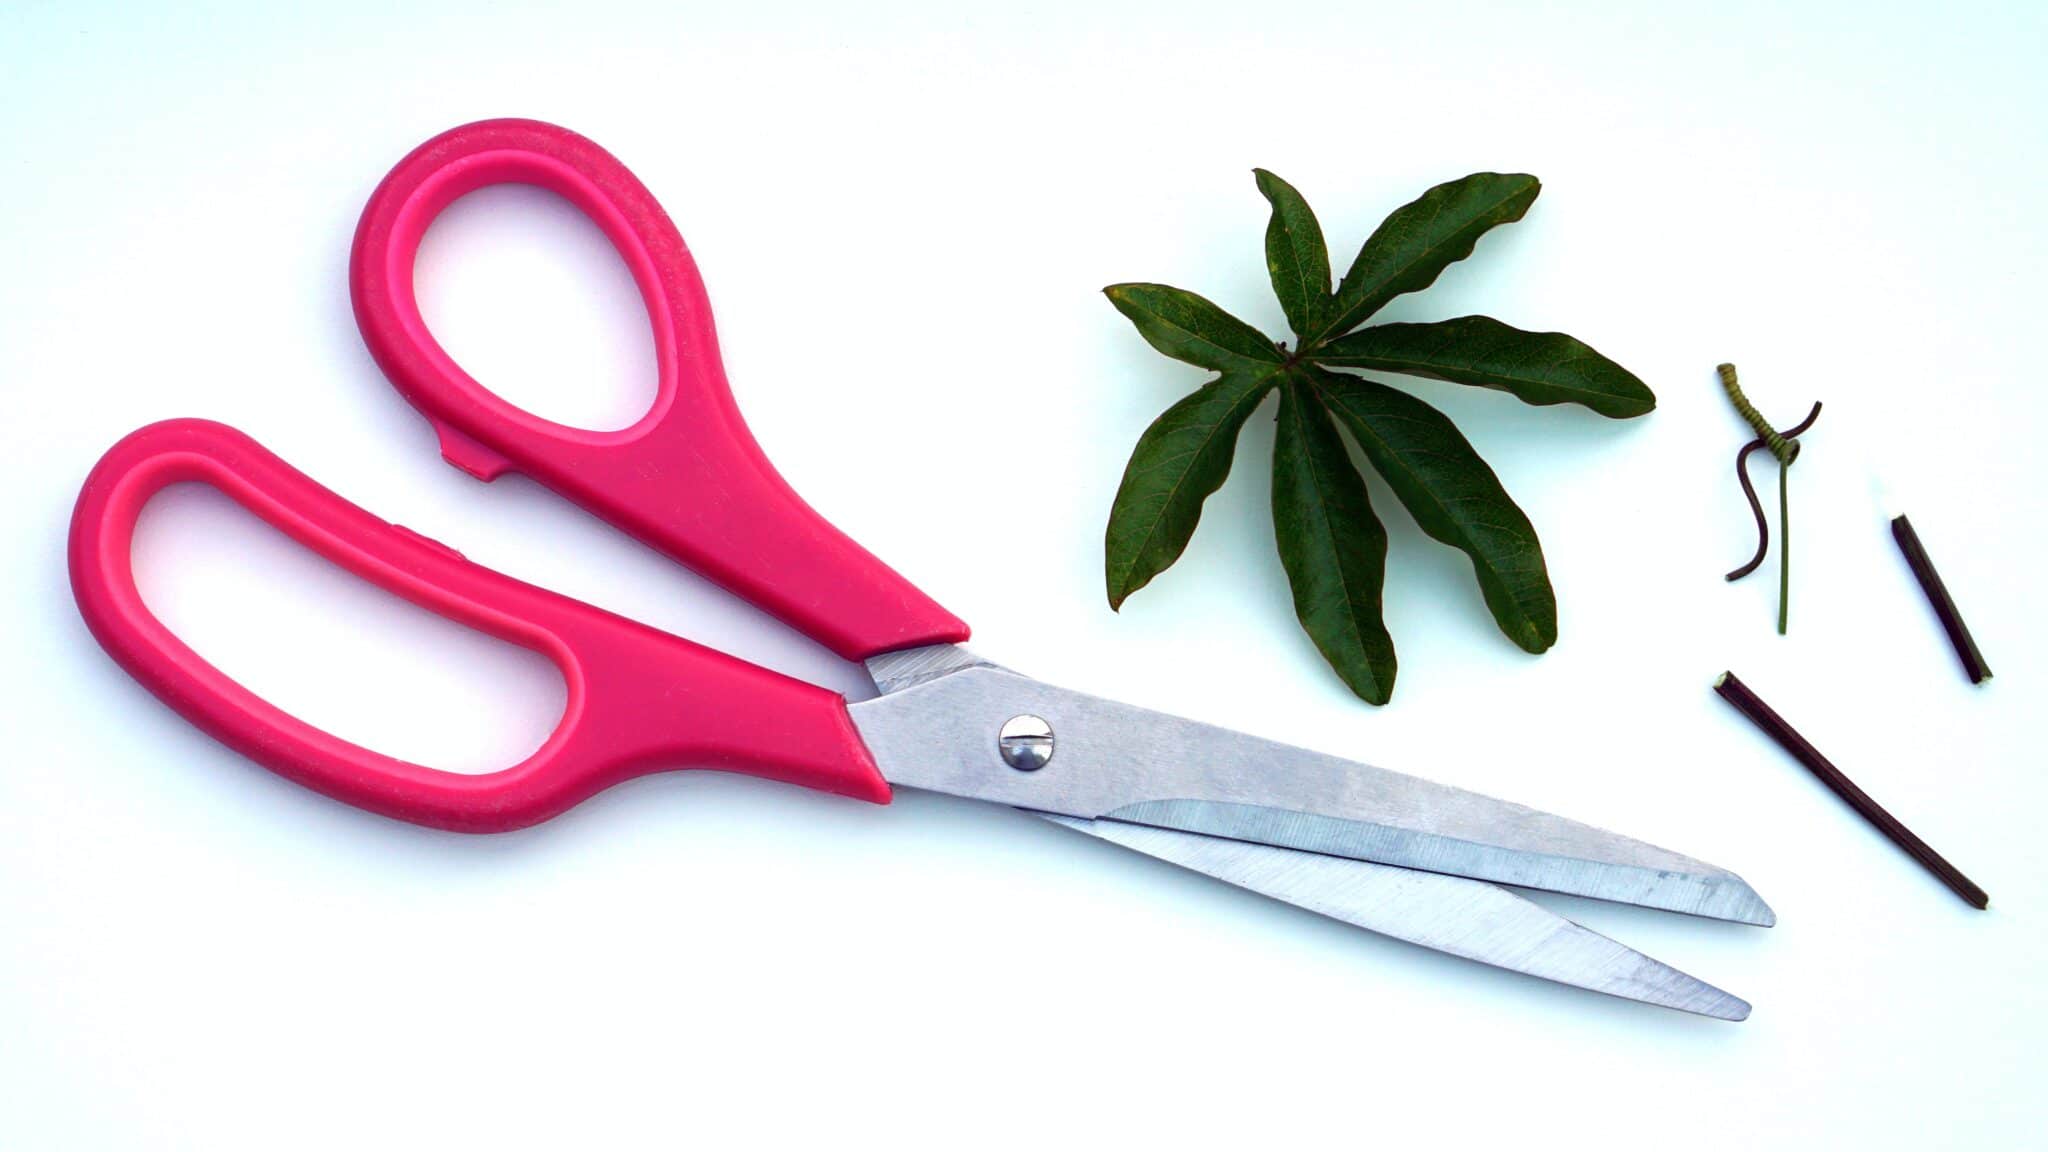 How To Sharpen Scissors- 5 Effective Ways